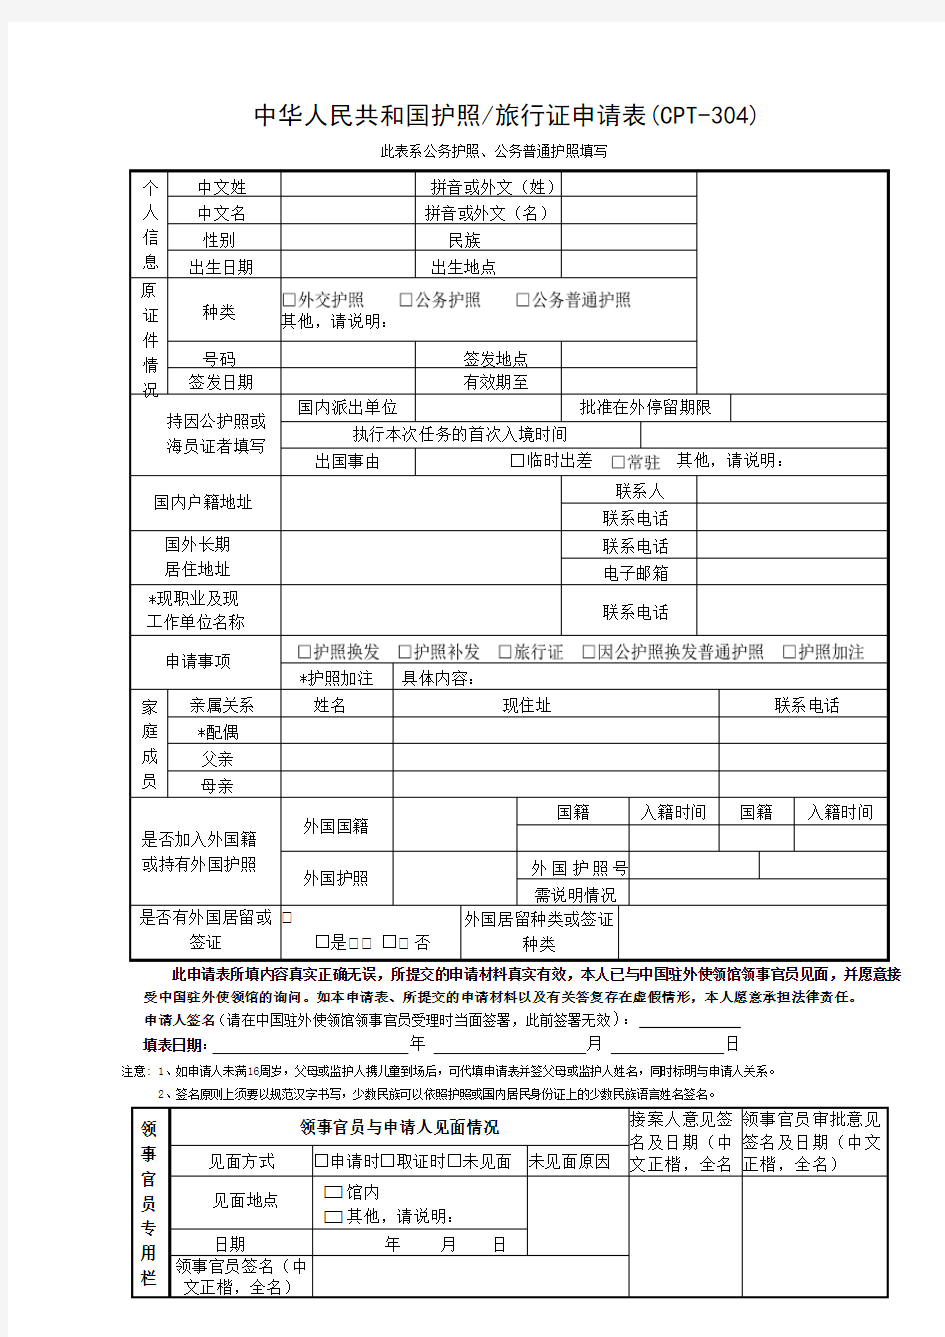 中华人民共和国护照旅行证申请表(CPT-304)